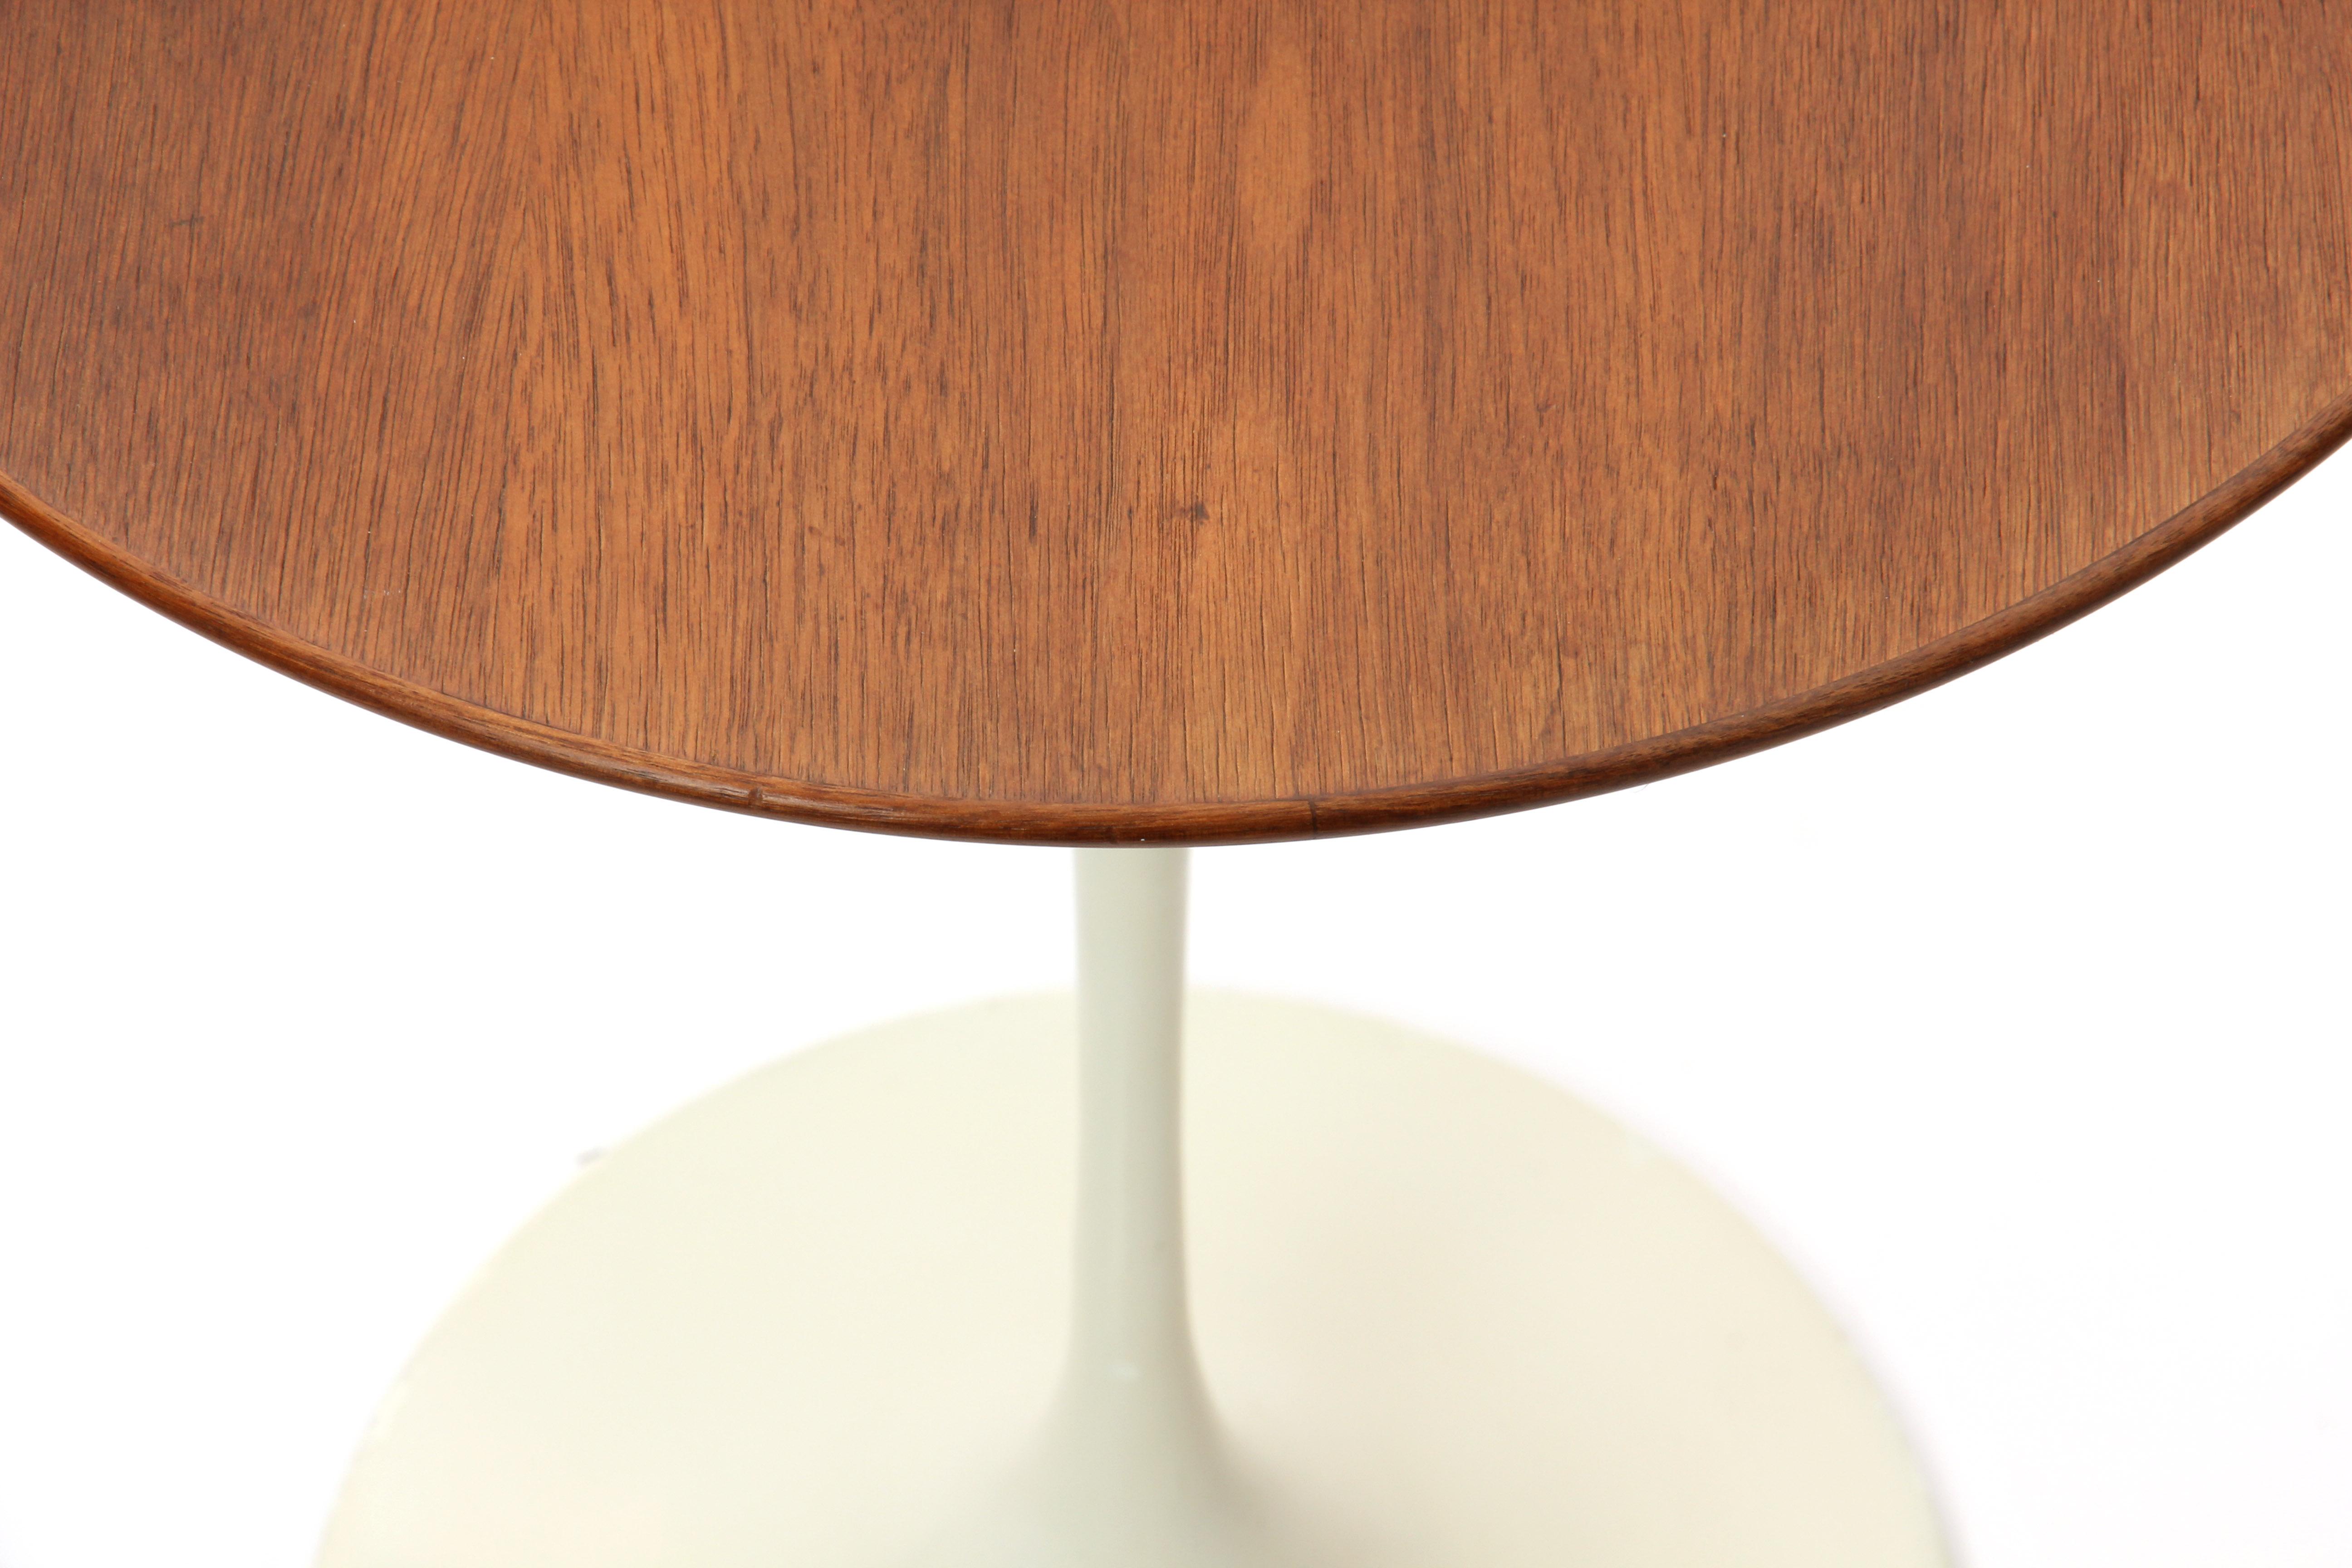 American Pedestal Side Table by Eero Saarinen